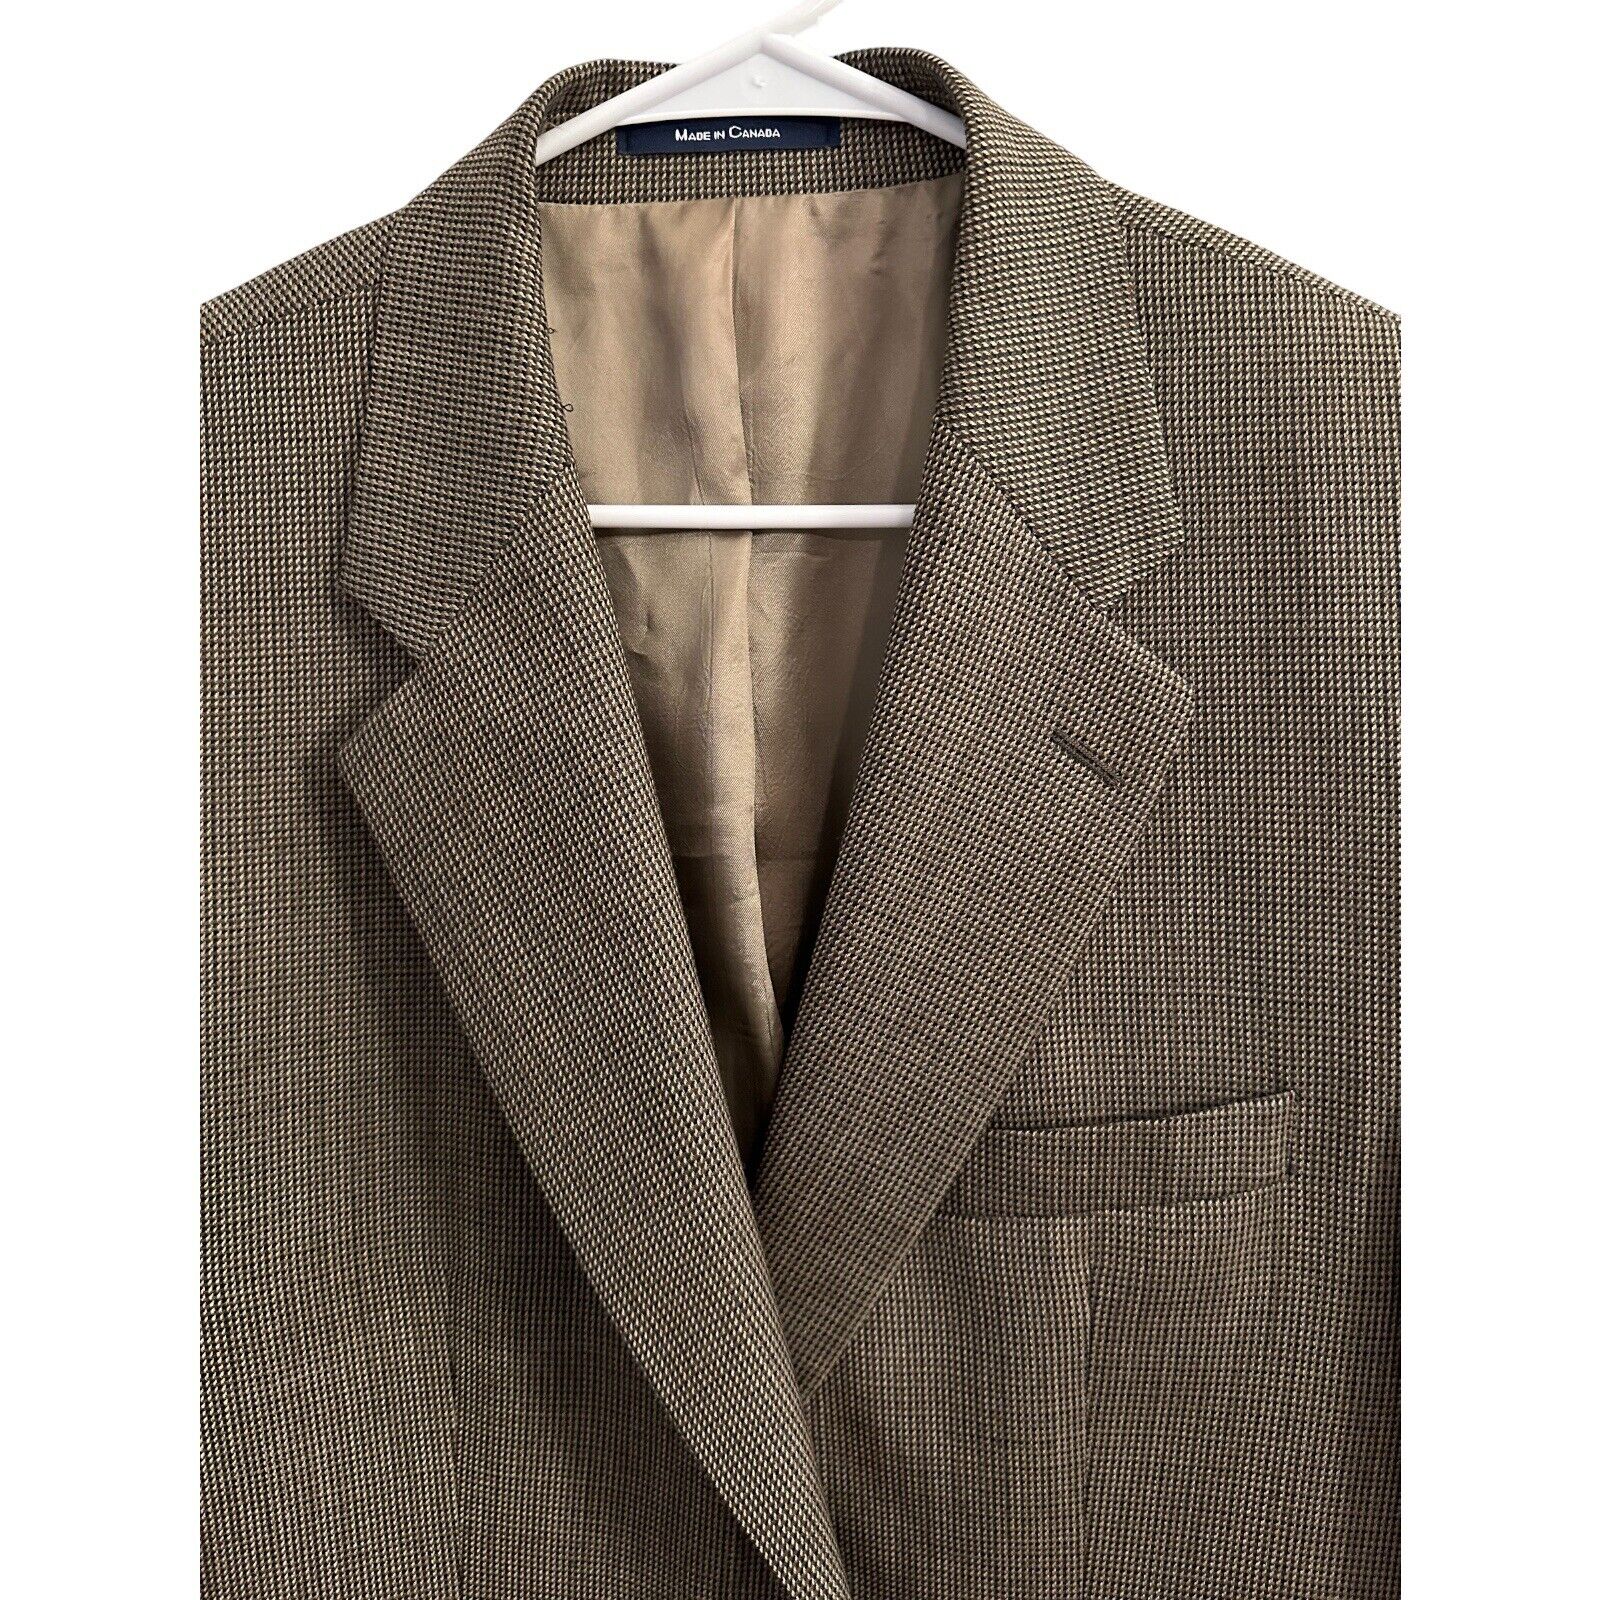 Chaps Men’s Wool Blazer Sport Coat Brown Beige Su… - image 2